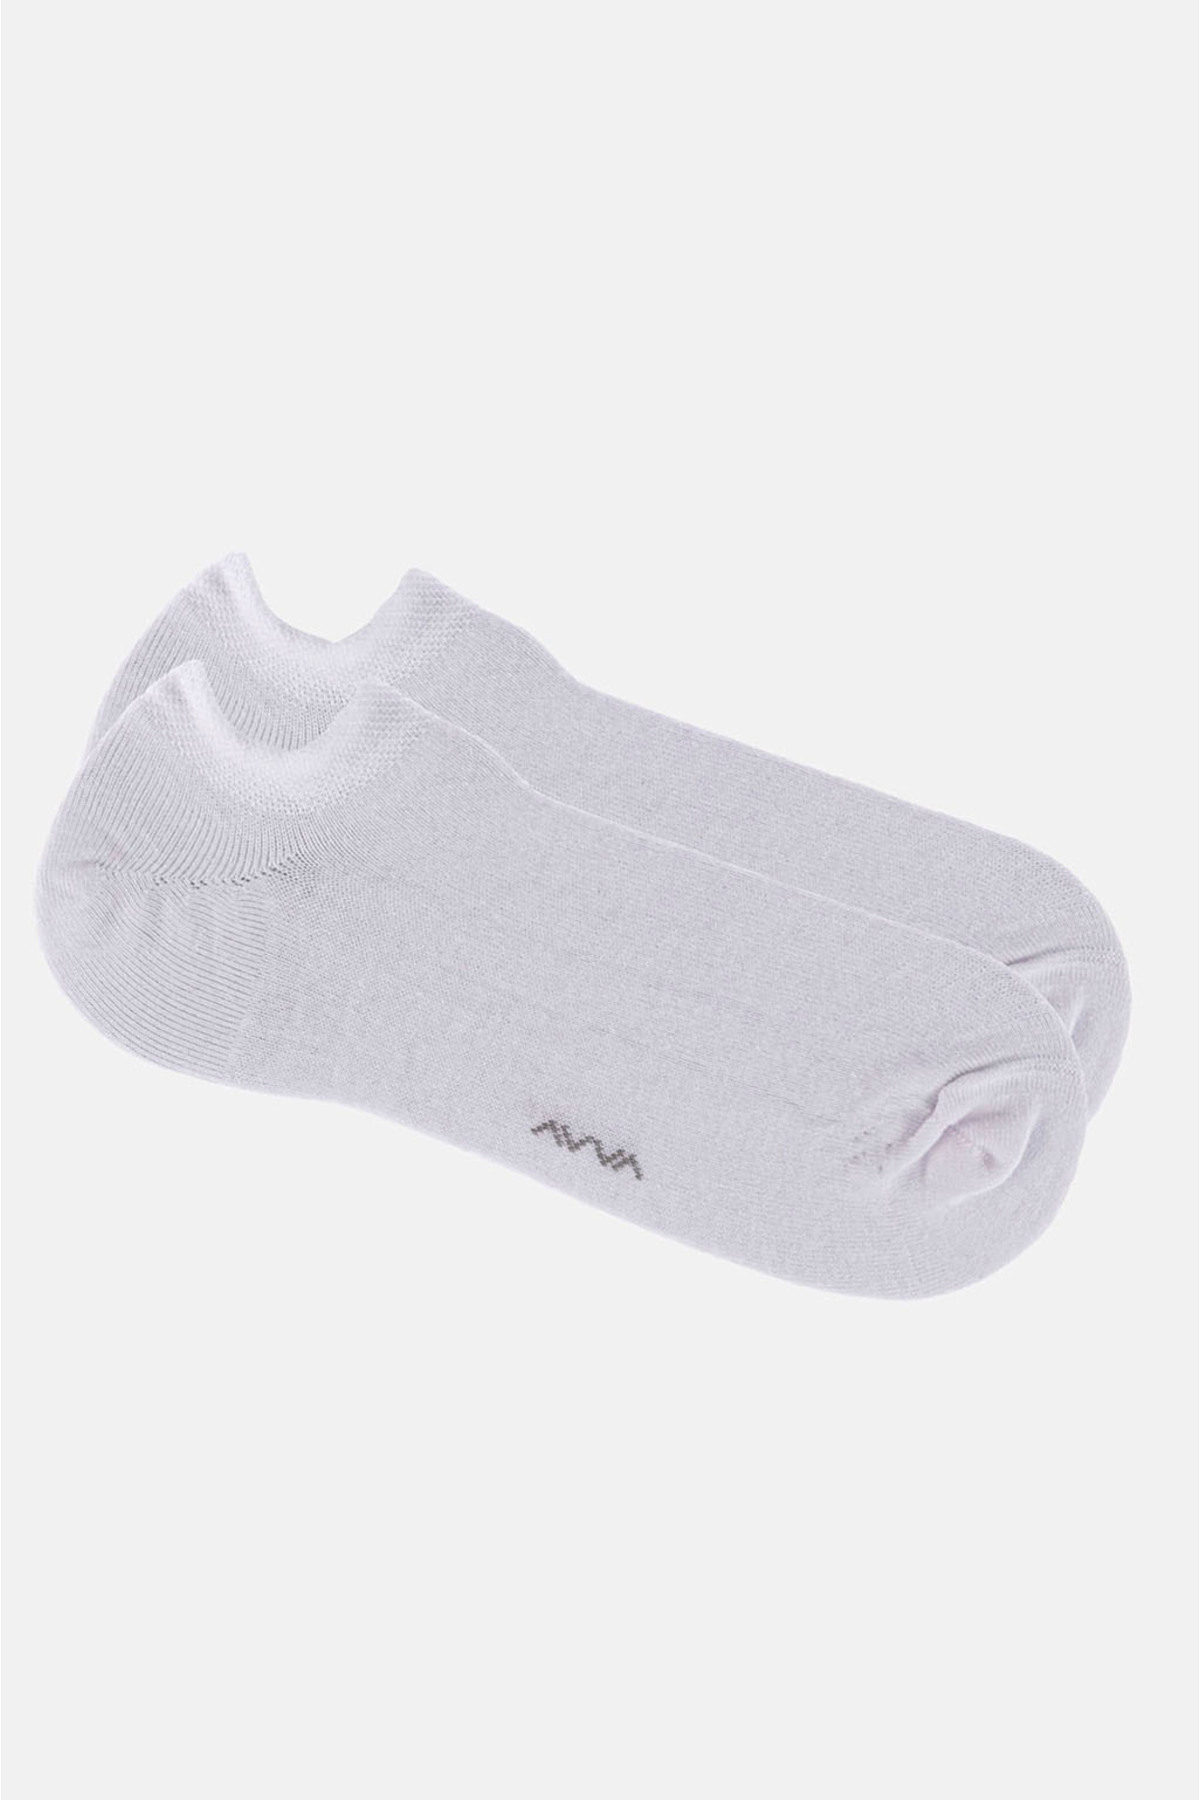 Avva Men's White Sneaker Socks